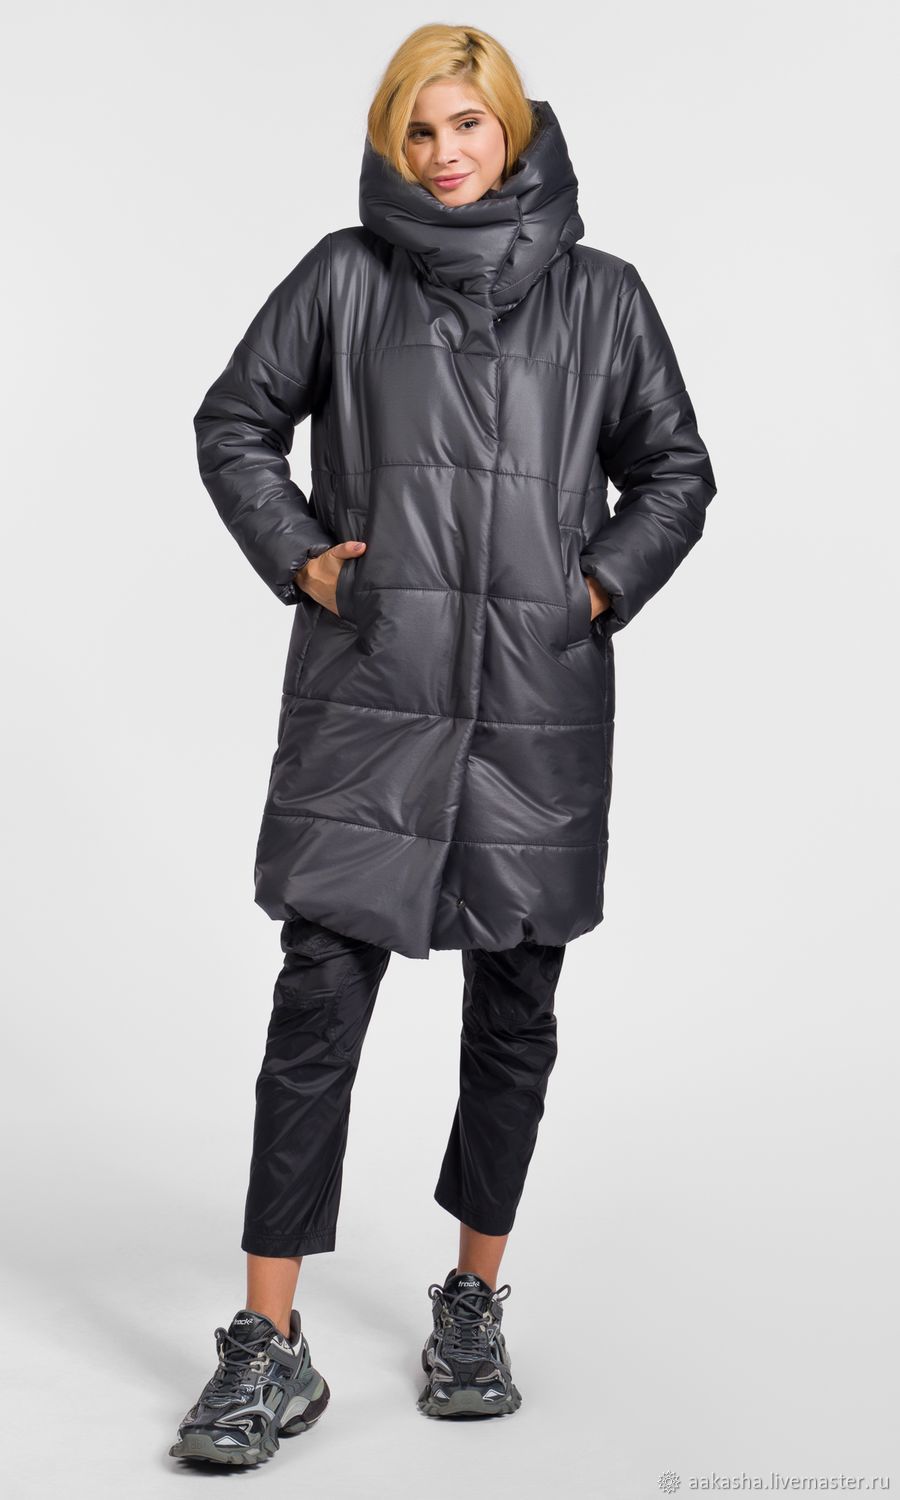 Зимняя куртка с капюшоном Warm Jacket, Куртки, София,  Фото №1